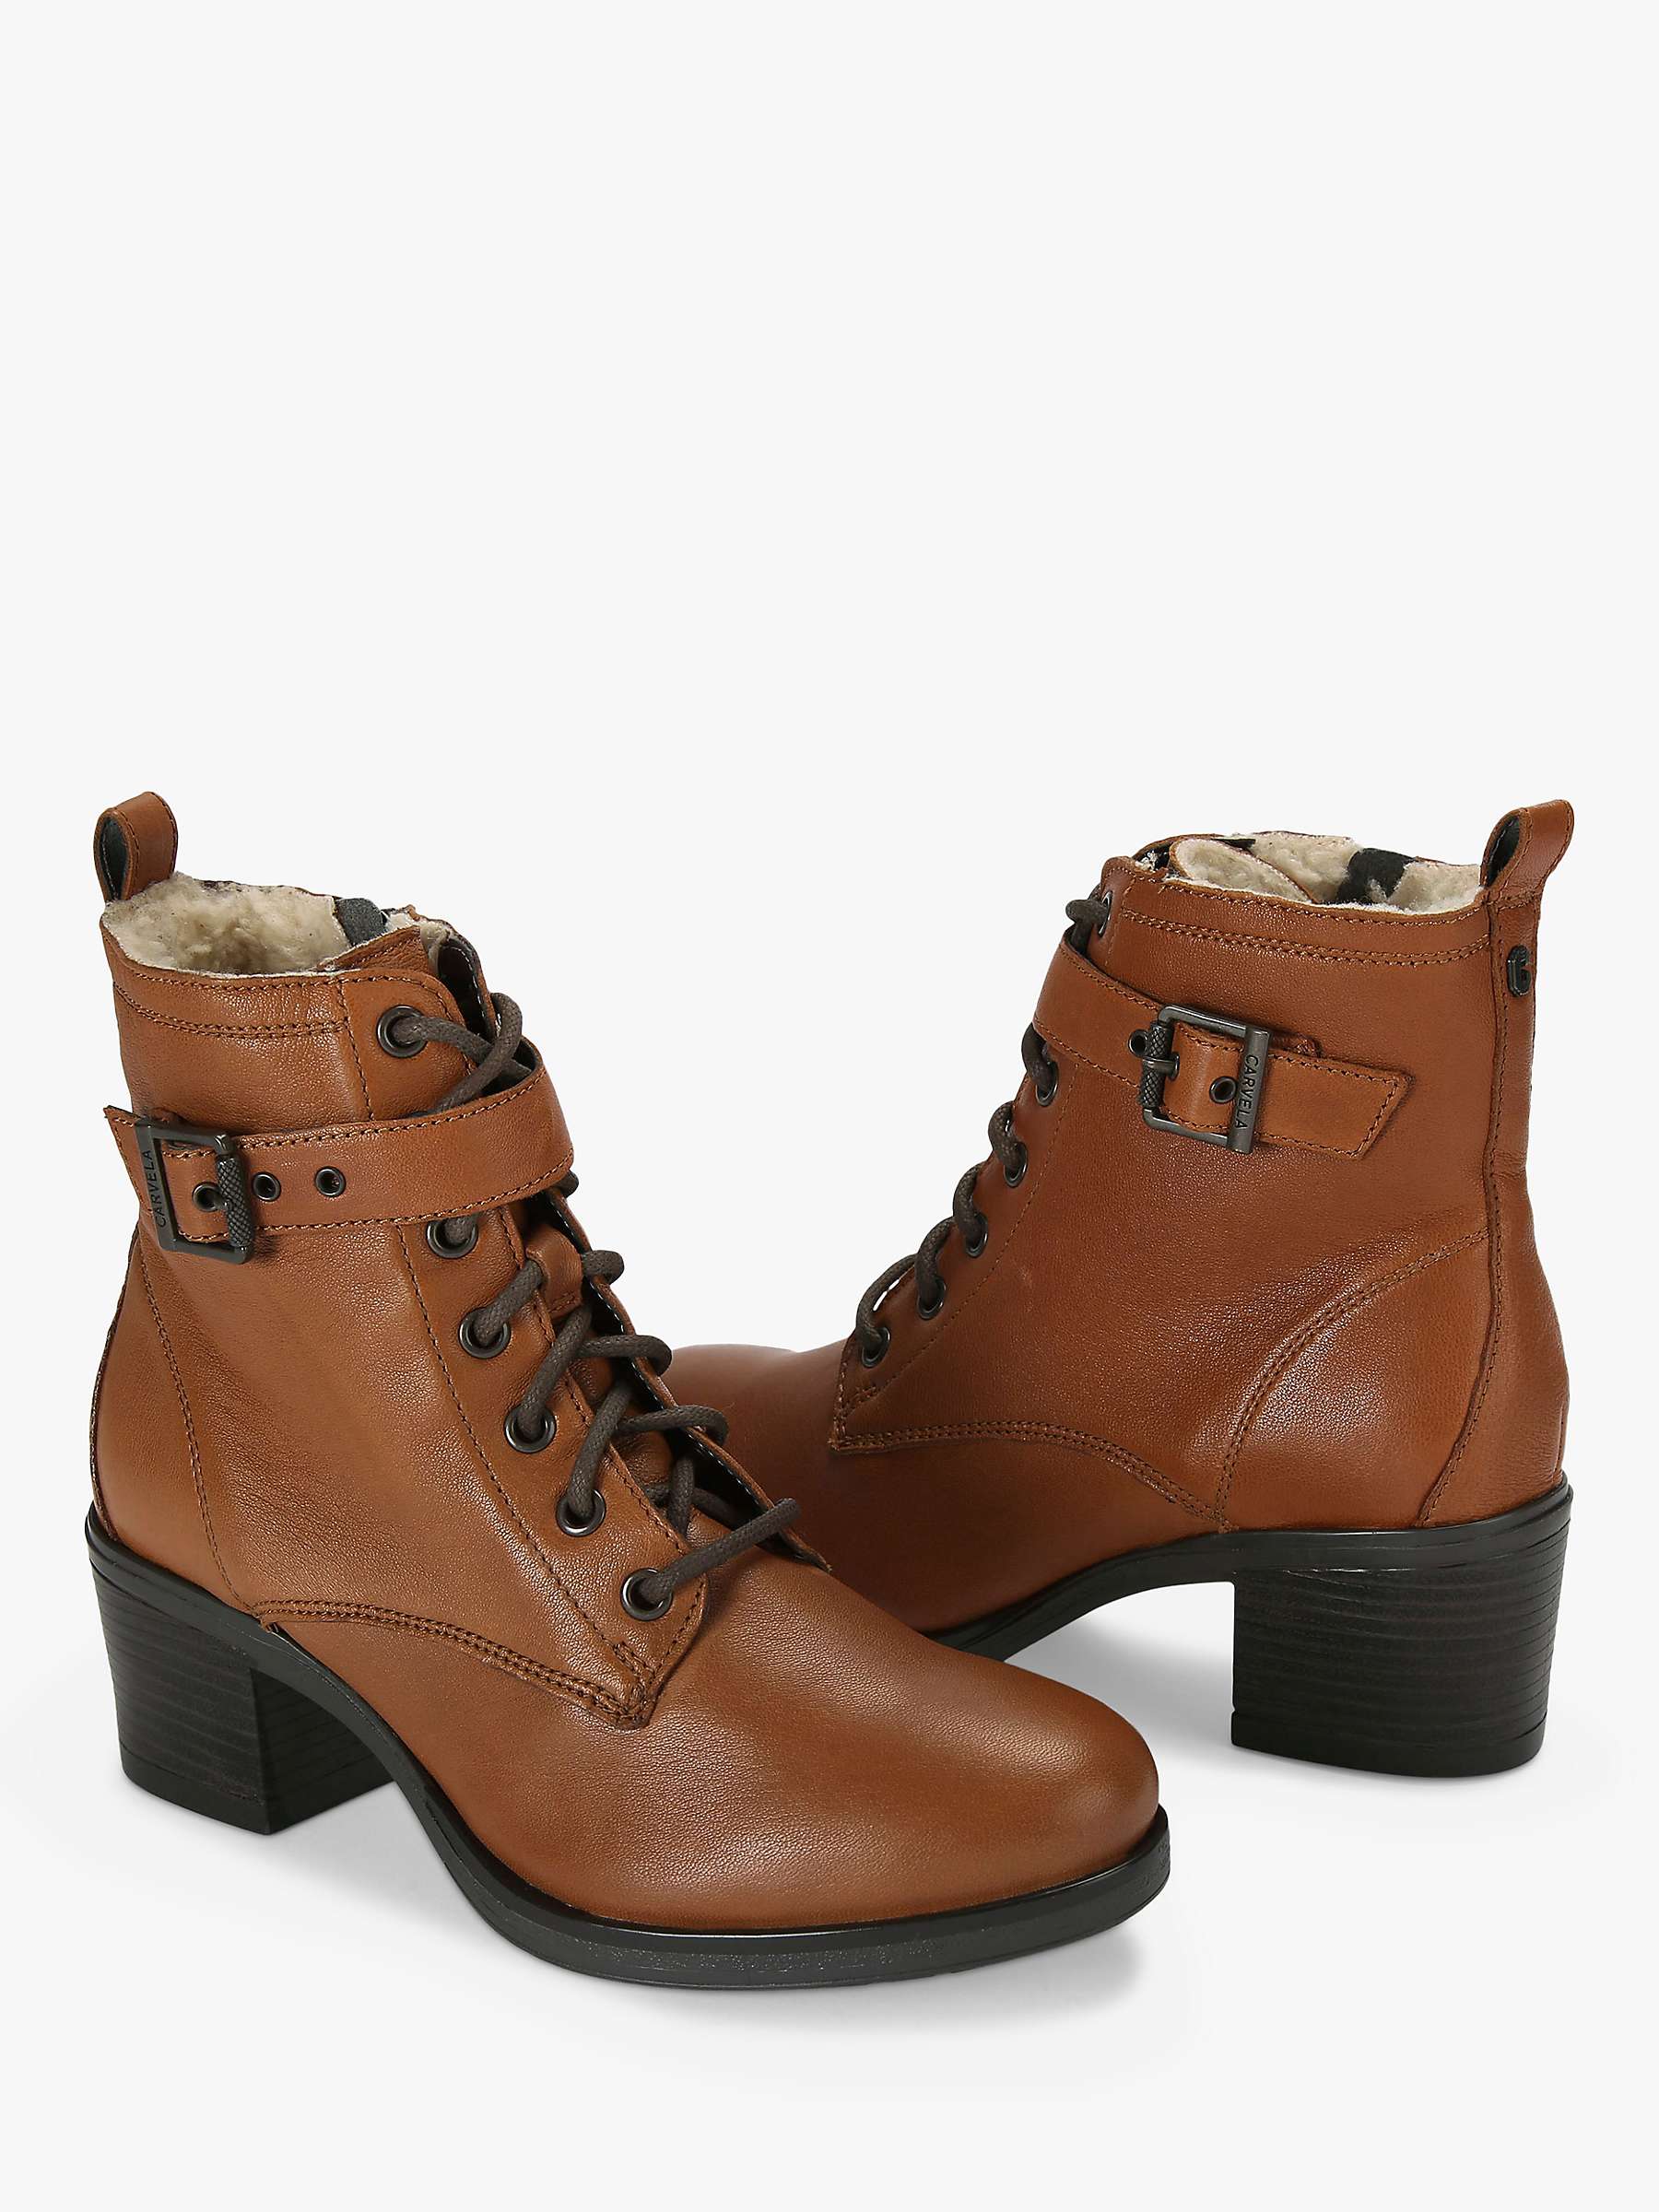 Buy Carvela Snug Leather Heeled Ankle Boots, Tan Online at johnlewis.com